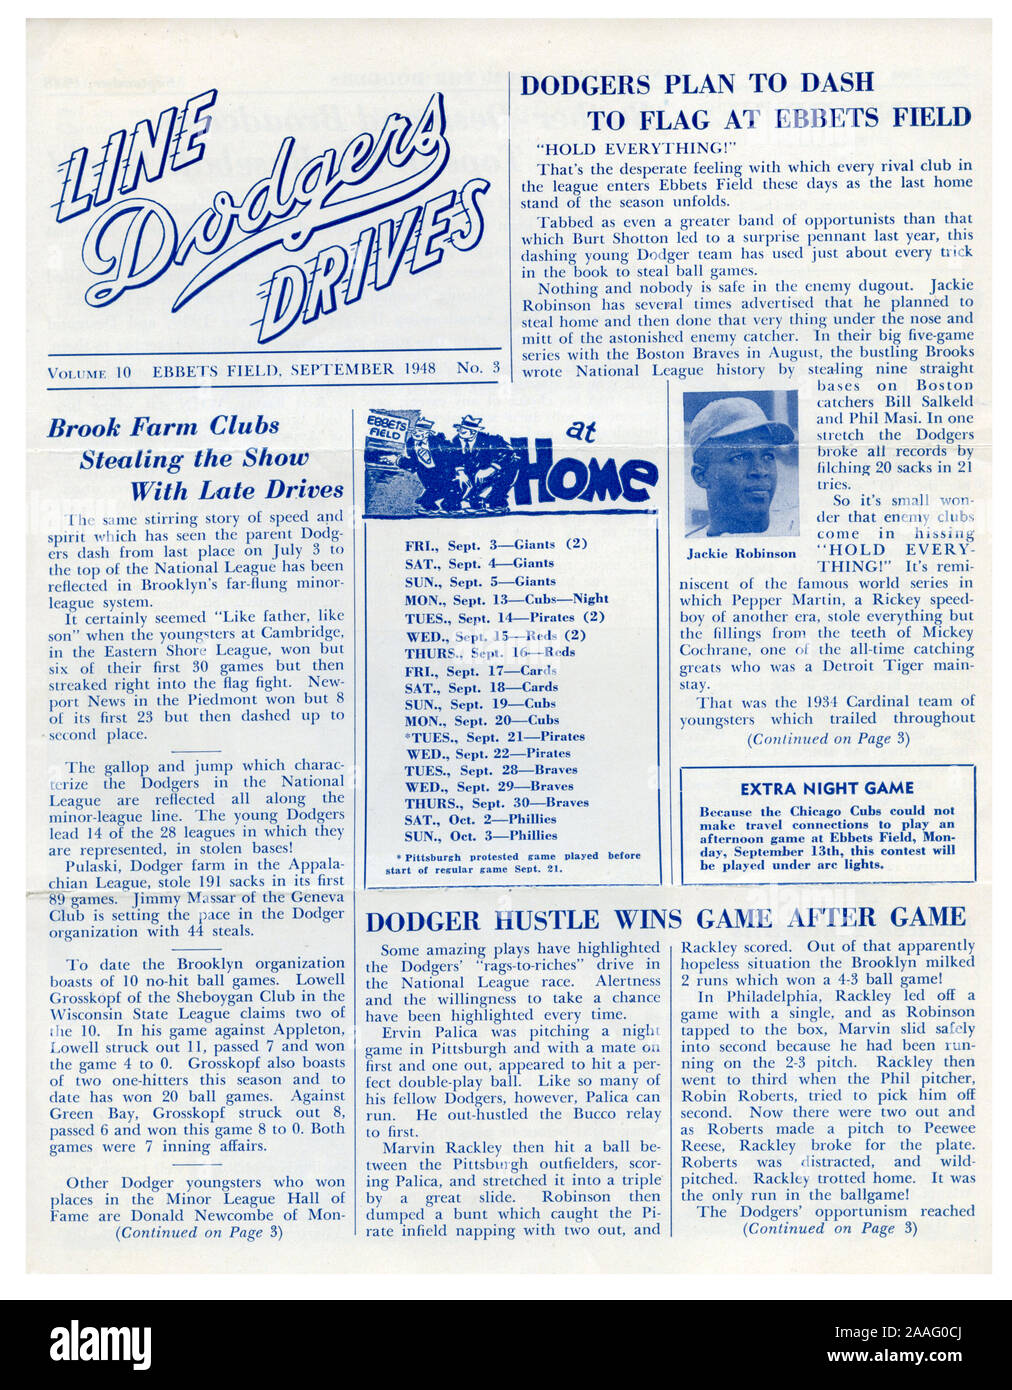 Eine Seite vom Sept. Ausgabe 1948 der Schwindler Linie Antriebe, der Newsletter für die Brooklyn Schwindler mit ihren Fans zu kommunizieren, einen Artikel und ein Foto der Jackie Robinson spricht über seine Fähigkeit zu Hause zu stehlen. Stockfoto